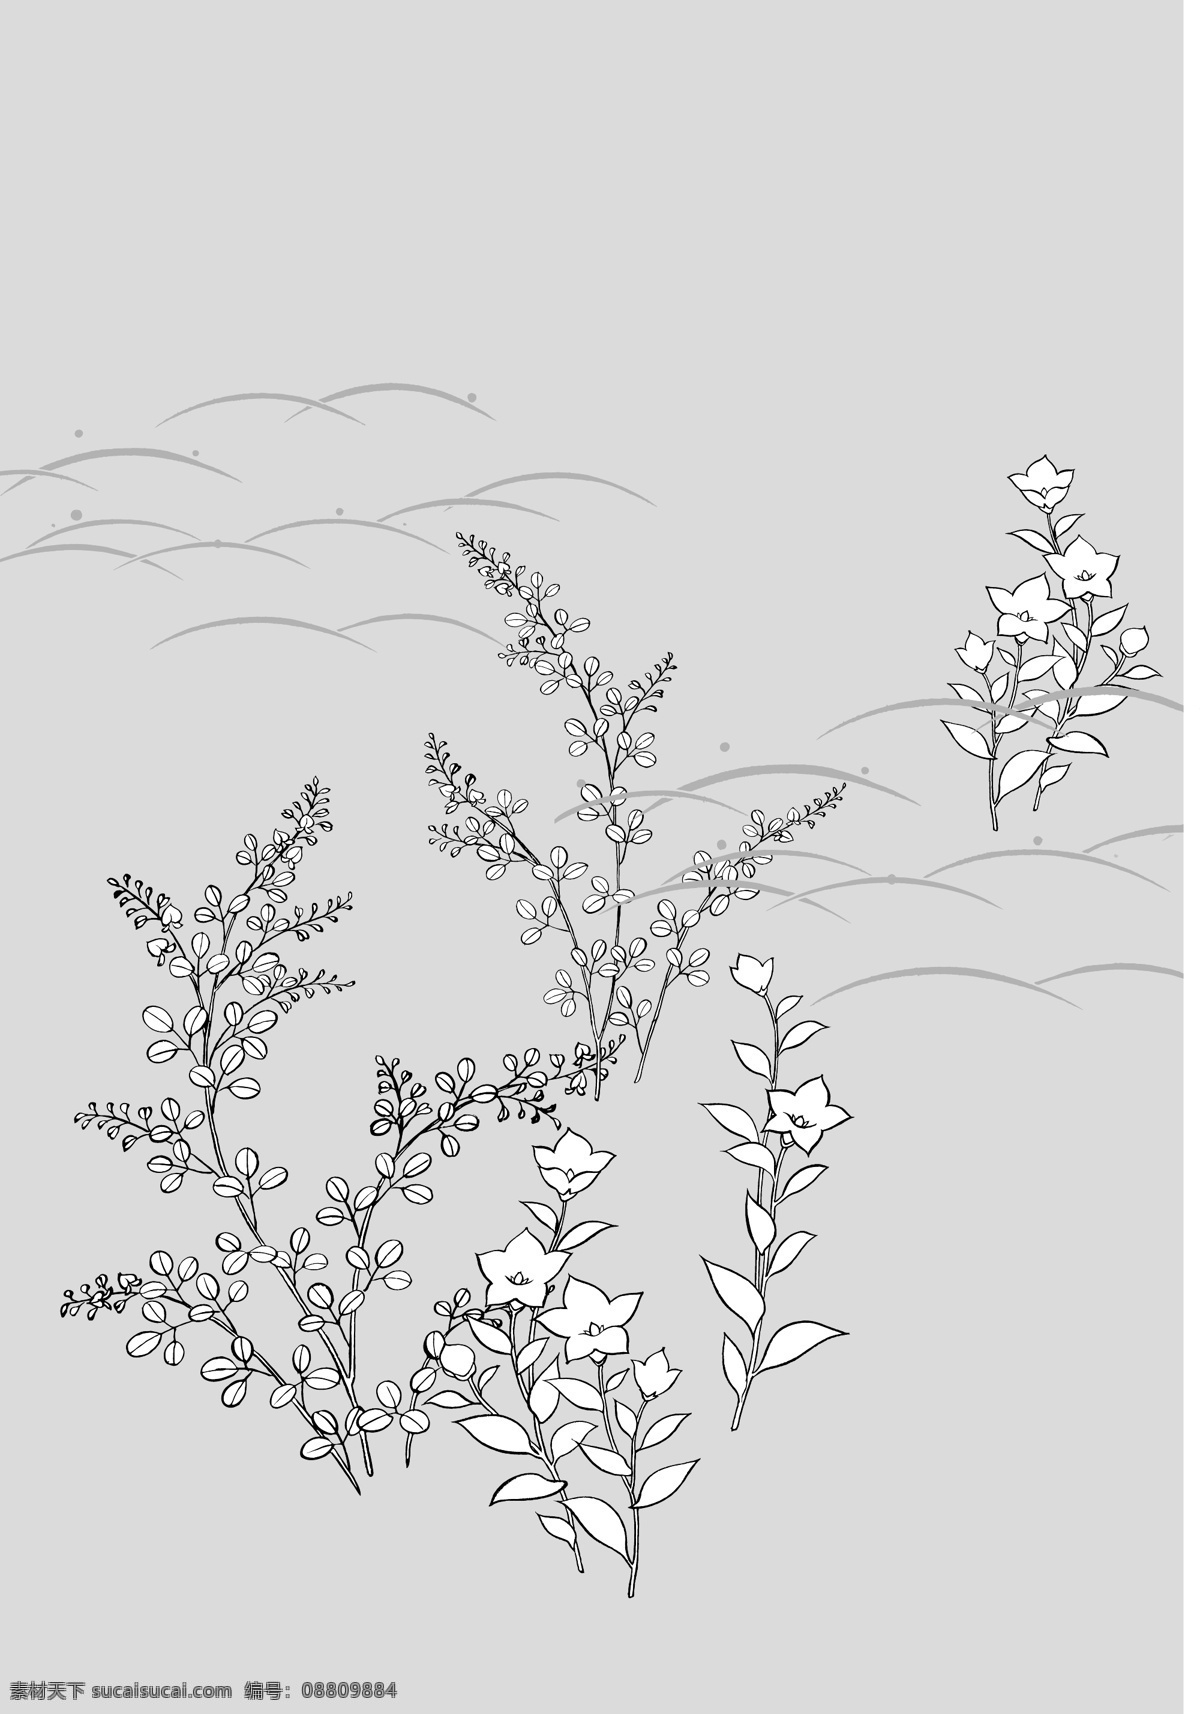 桔梗 土壤 率 日本 植物 材料 拉伸 朵 向量 ca 灰色